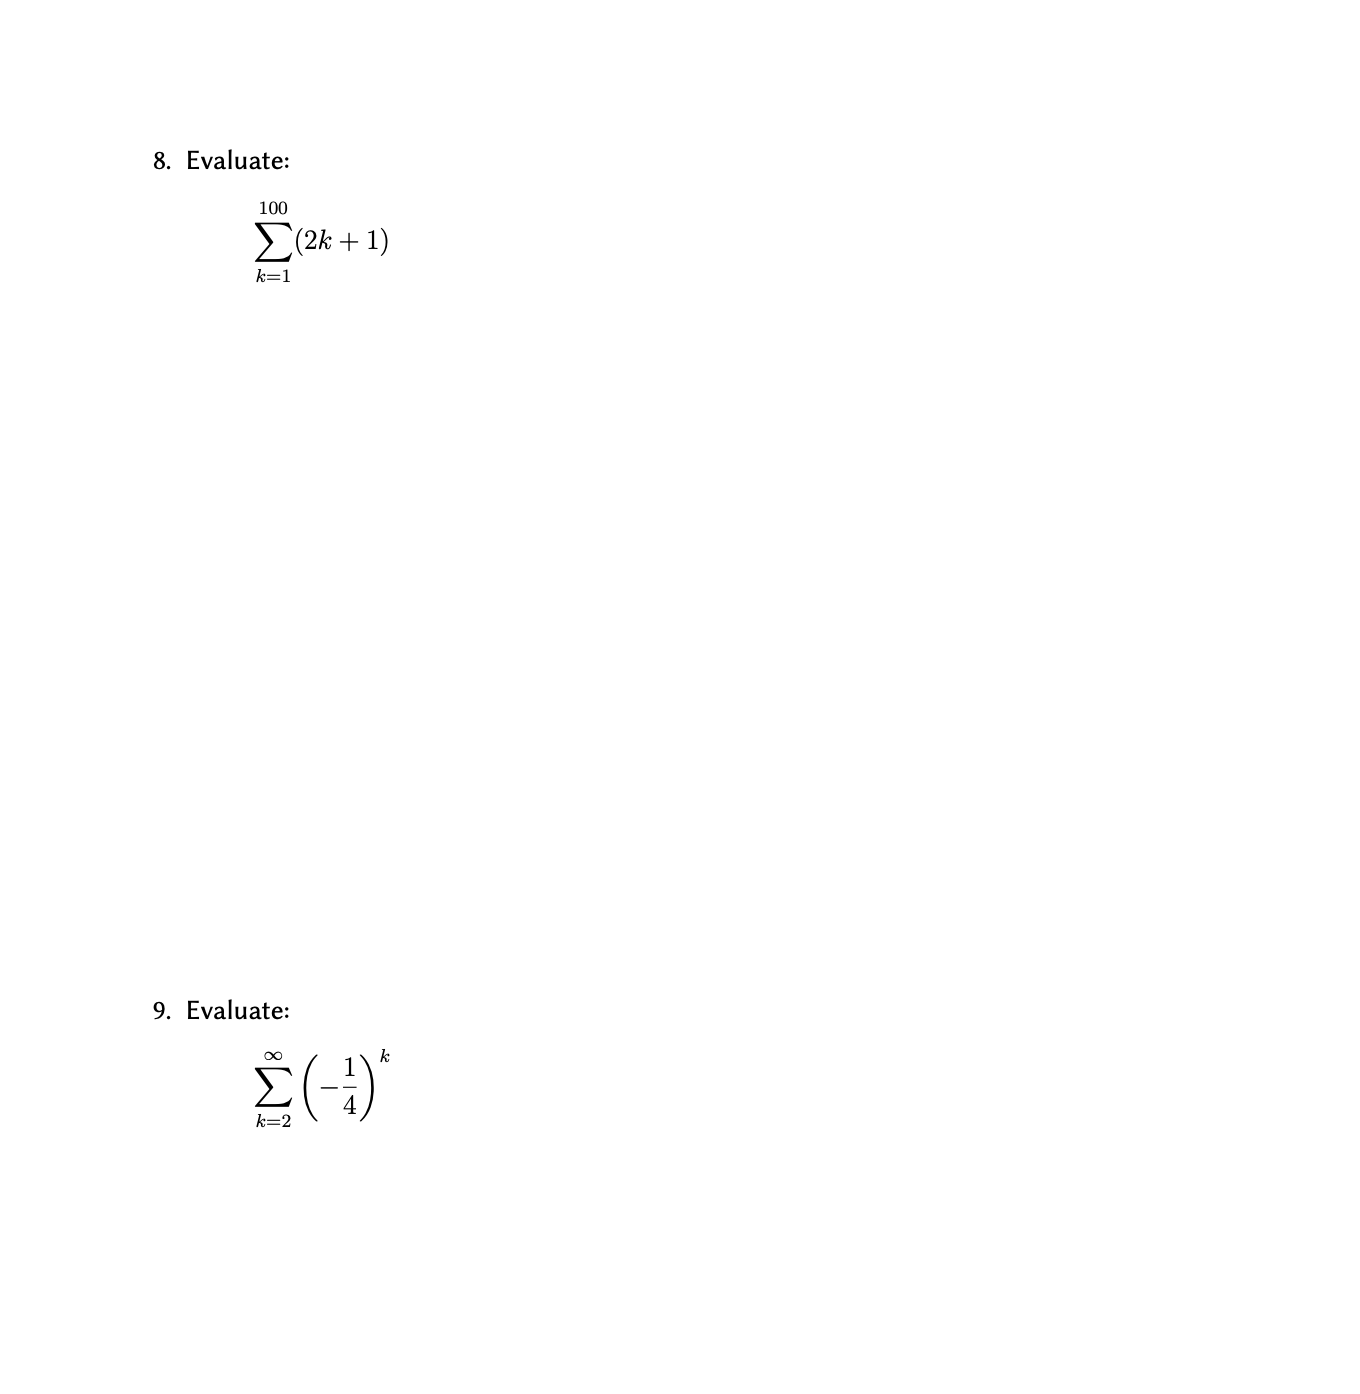 8. Evaluate:
Σο
100
(2k + 1)
k=1
9. Evaluate:
Σ(,
k=2
